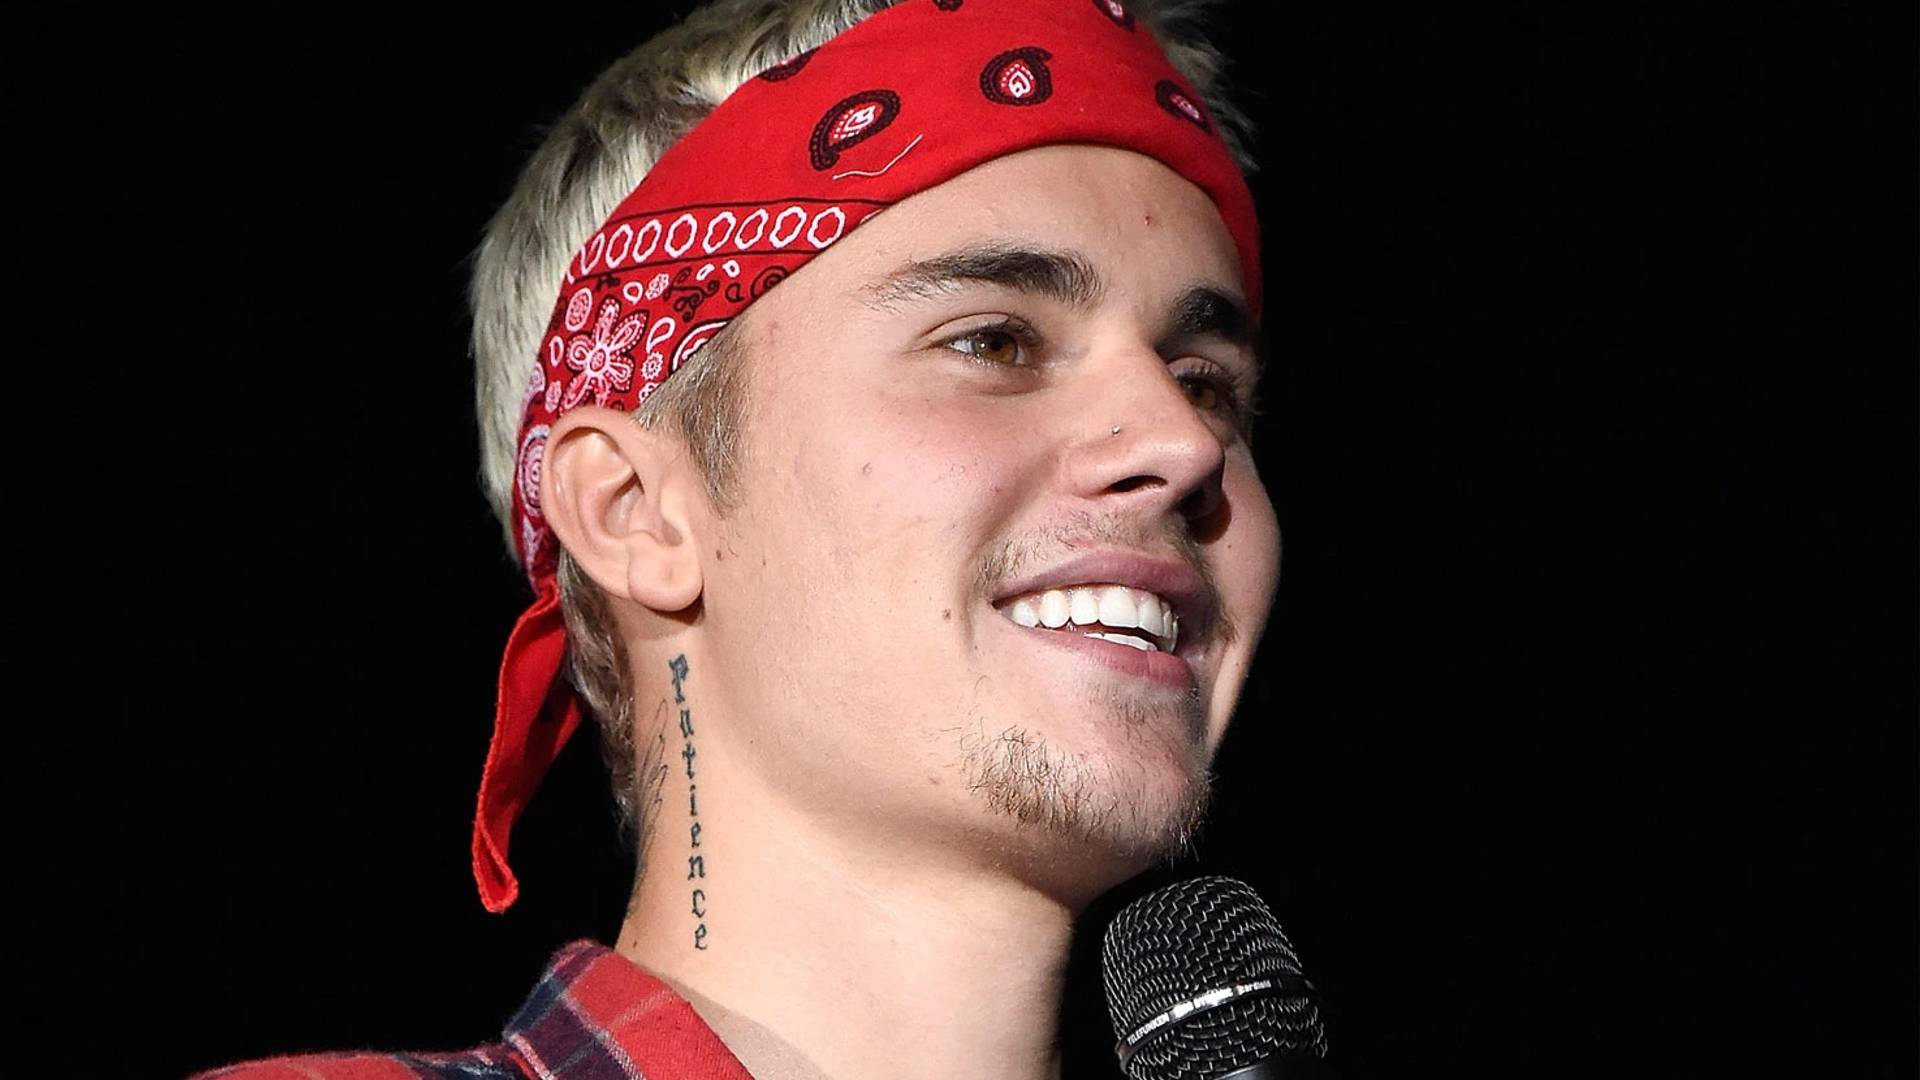 Justin Bieber anuncia show em São Paulo com ingressos que podem custar mais de R$ 5 mil - Metropolitana FM